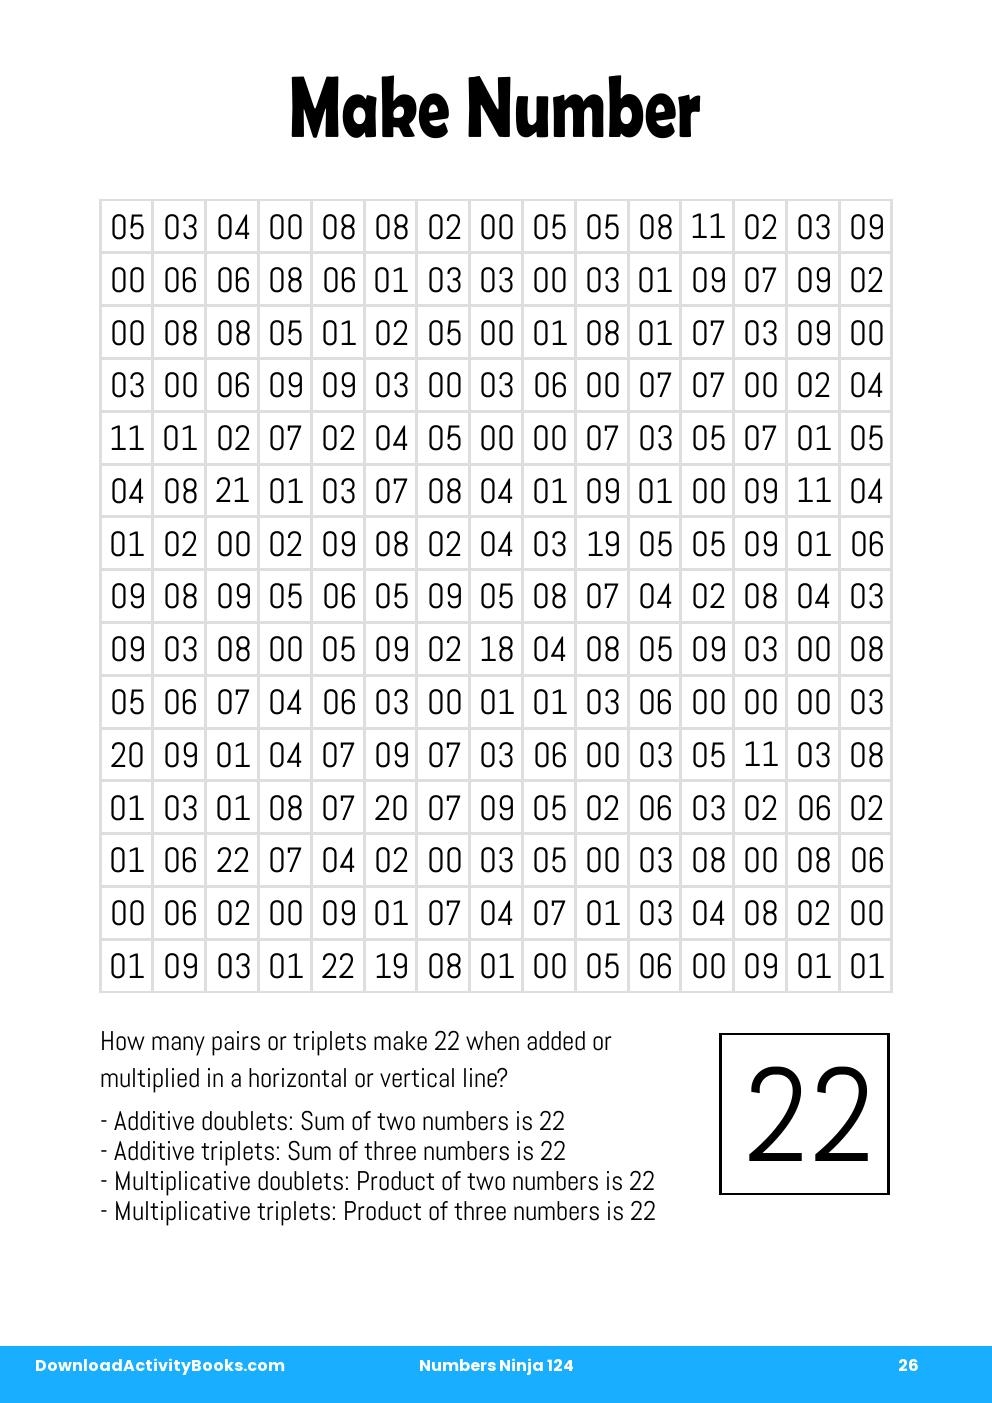 Make Number in Numbers Ninja 124